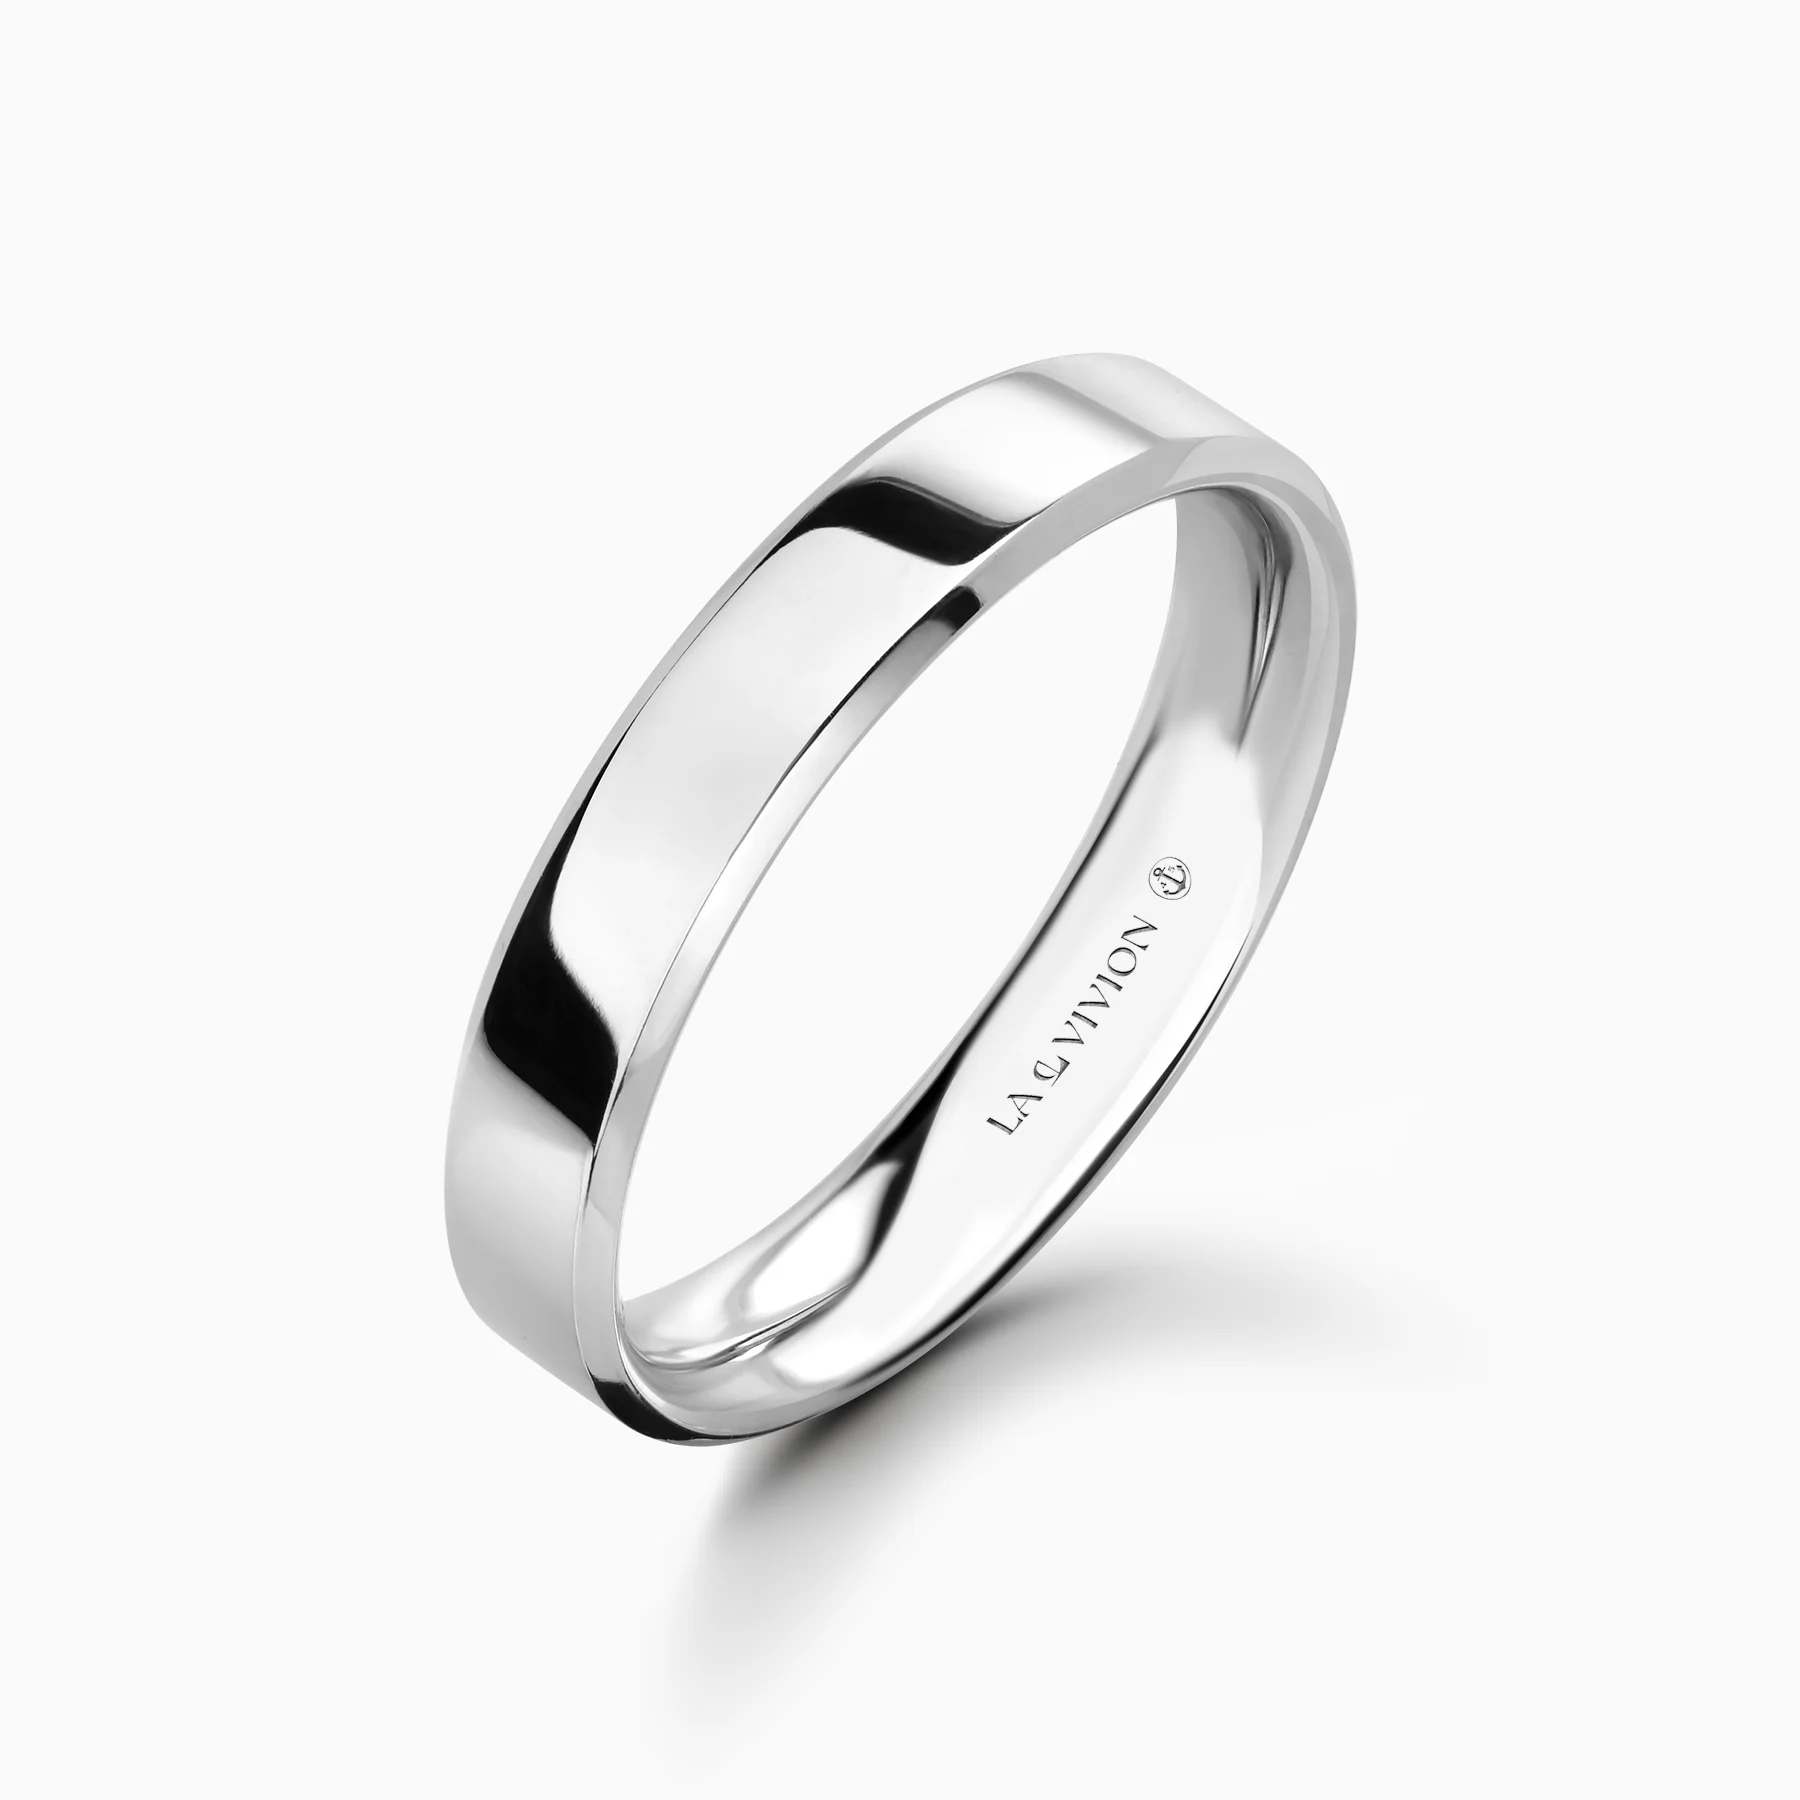 Обручальное кольцо Symbole 4 mm (Символ)